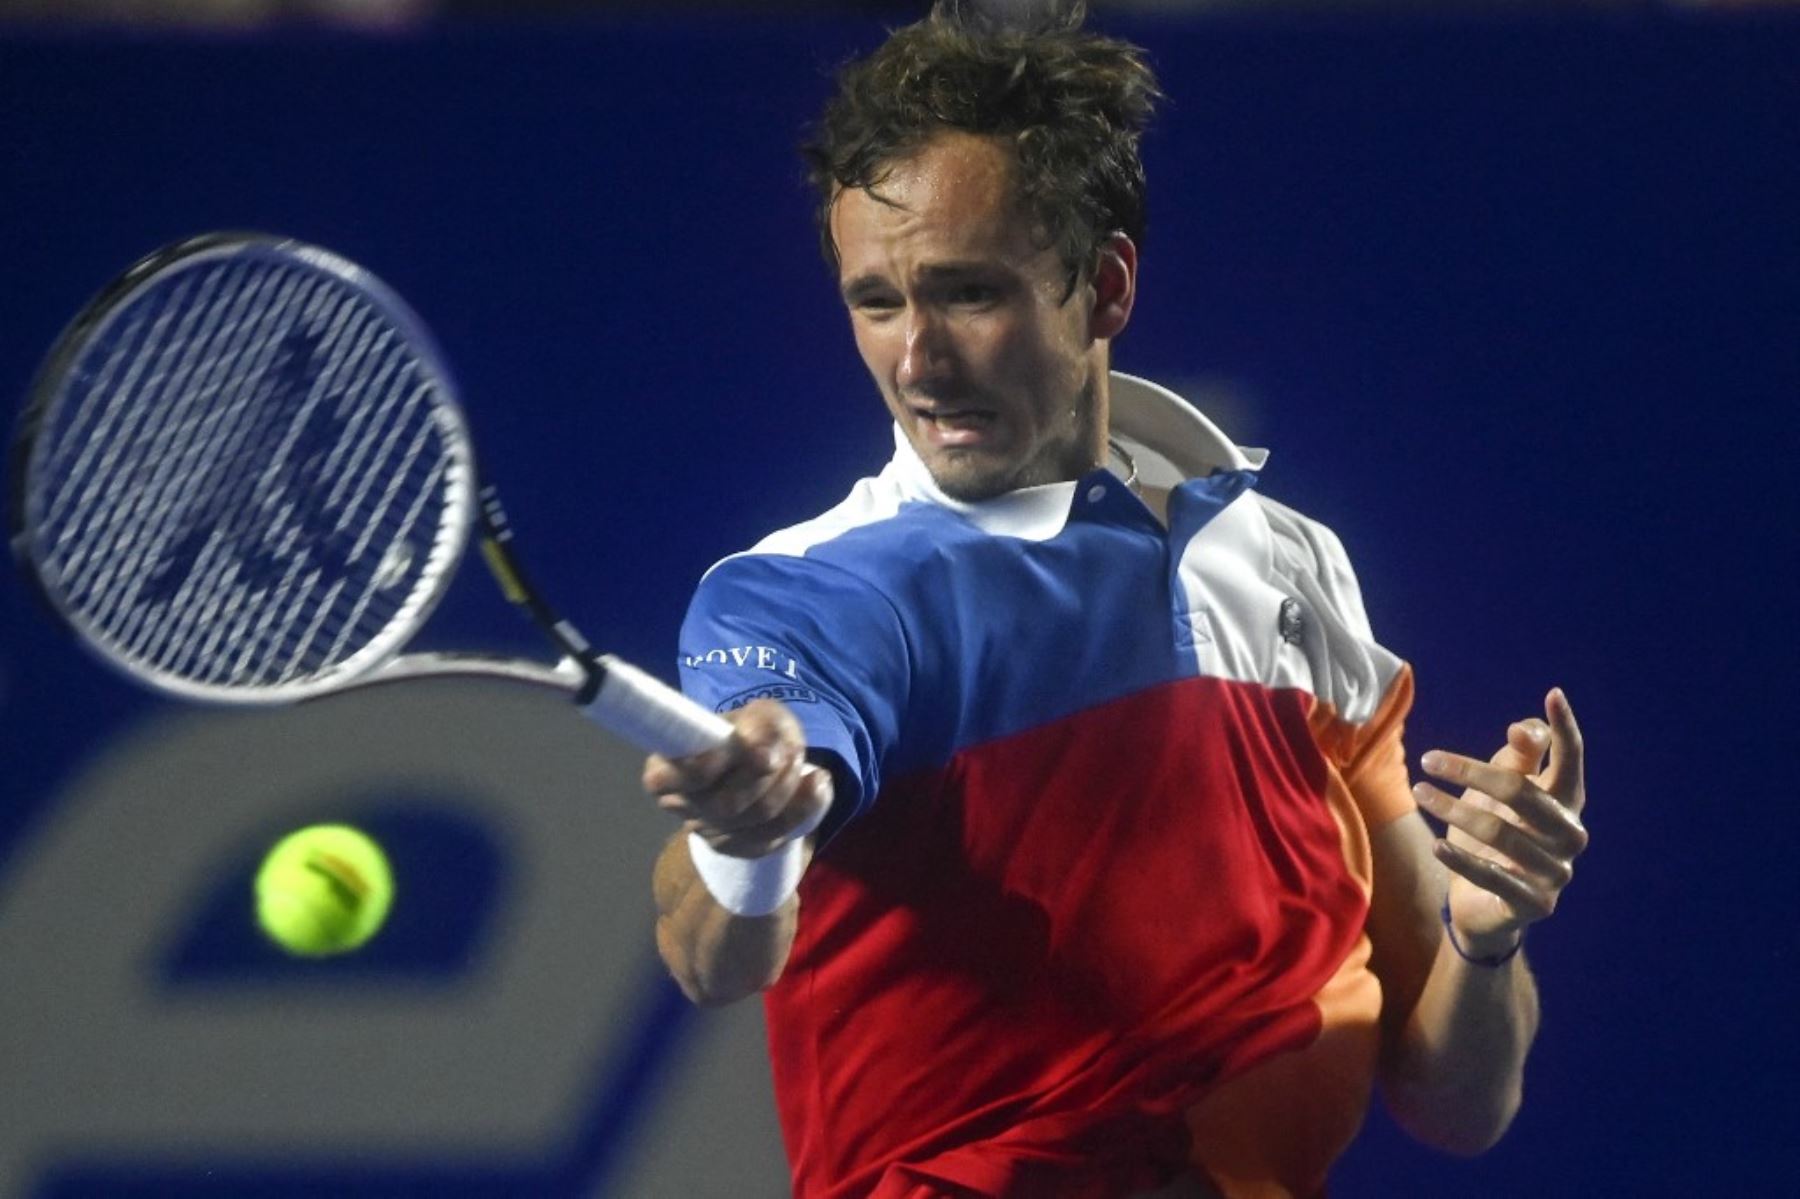 Daniil Medvedev desplazó a Djokovic en la cima del tenis mundial